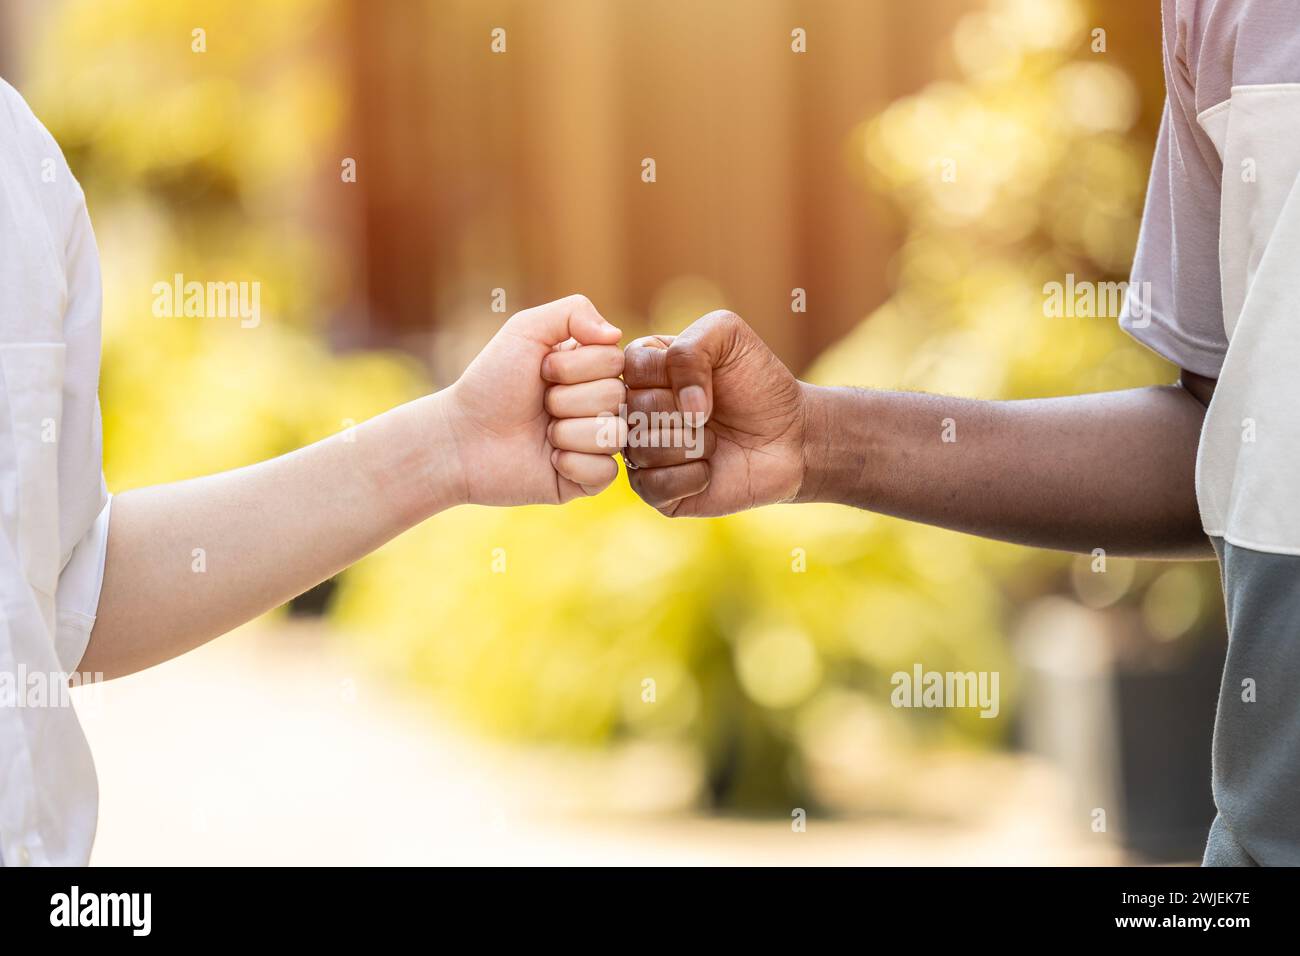 les gens noirs et blancs main poing bump ensemble pour saluer les amis dans les adolescents modernes. Banque D'Images